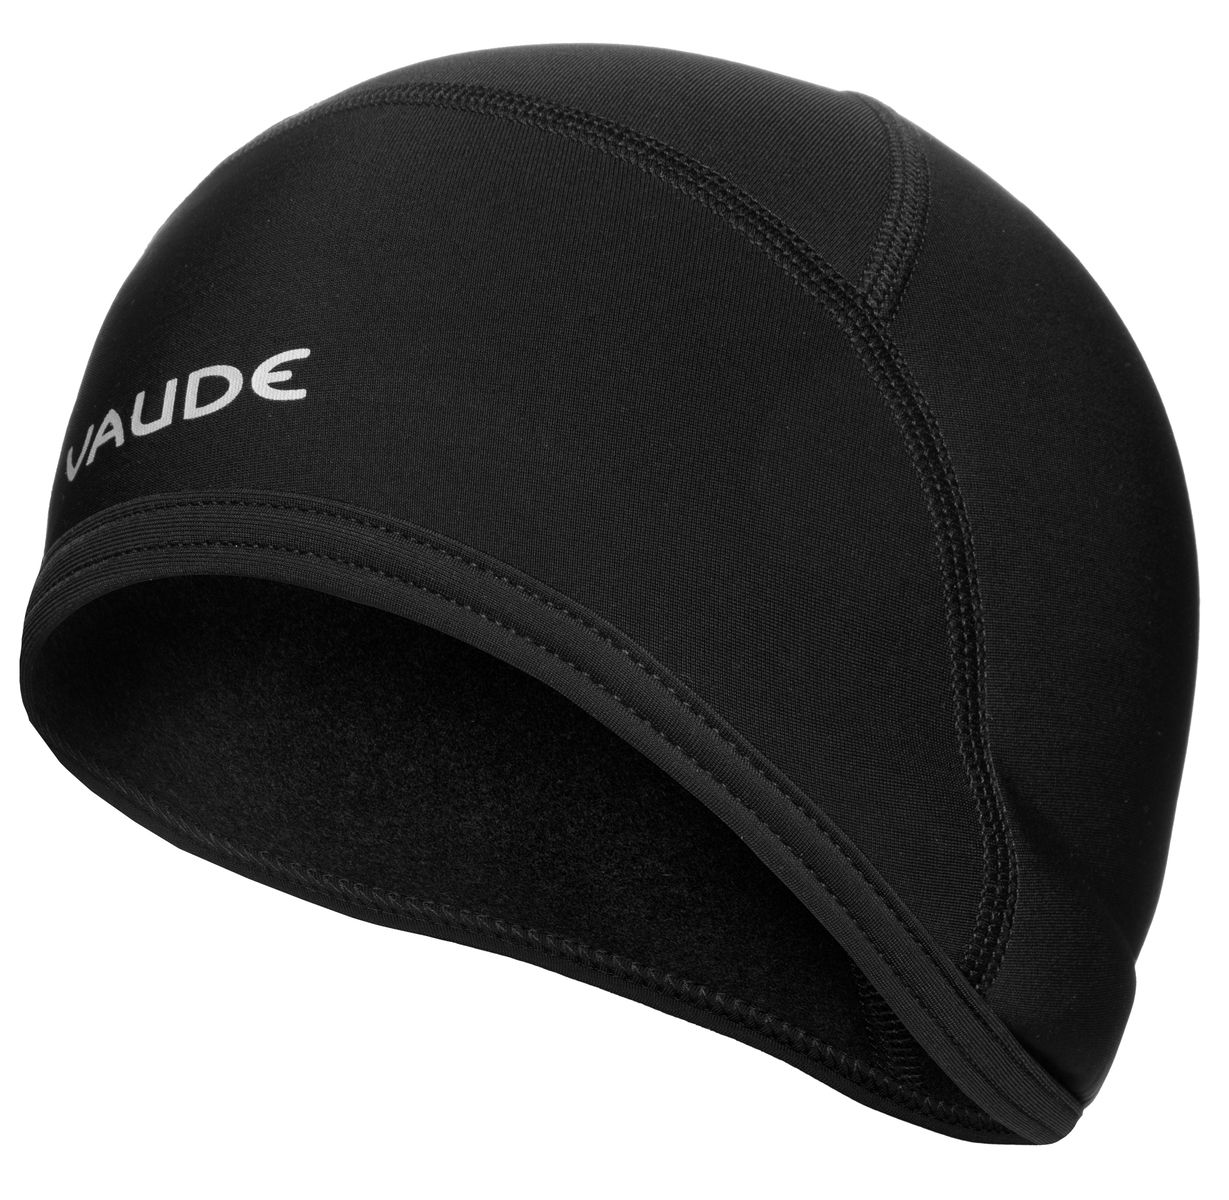 https://www.ebike24.com/media/image/5c/70/0e/vaude-bike-warm-cap-helmet-underwear-cap-black.jpg